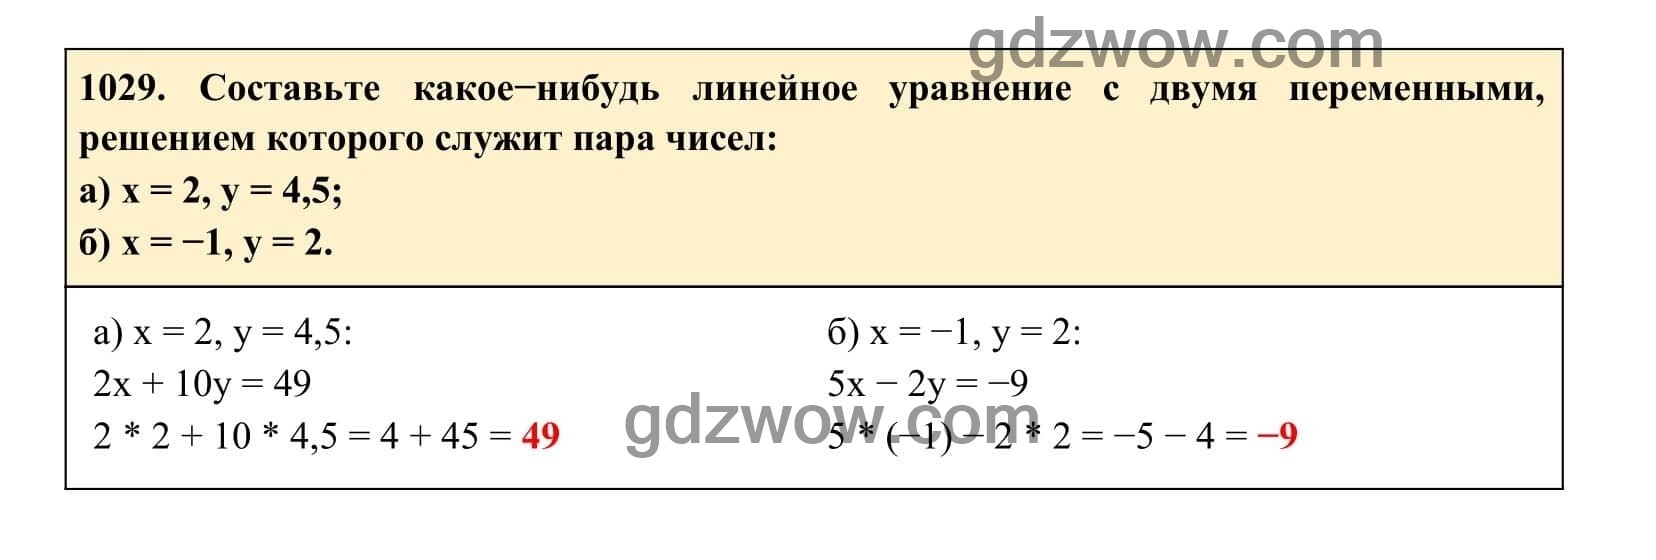 Упражнение 1029 - ГДЗ по Алгебре 7 класс Учебник Макарычев (решебник) - GDZwow